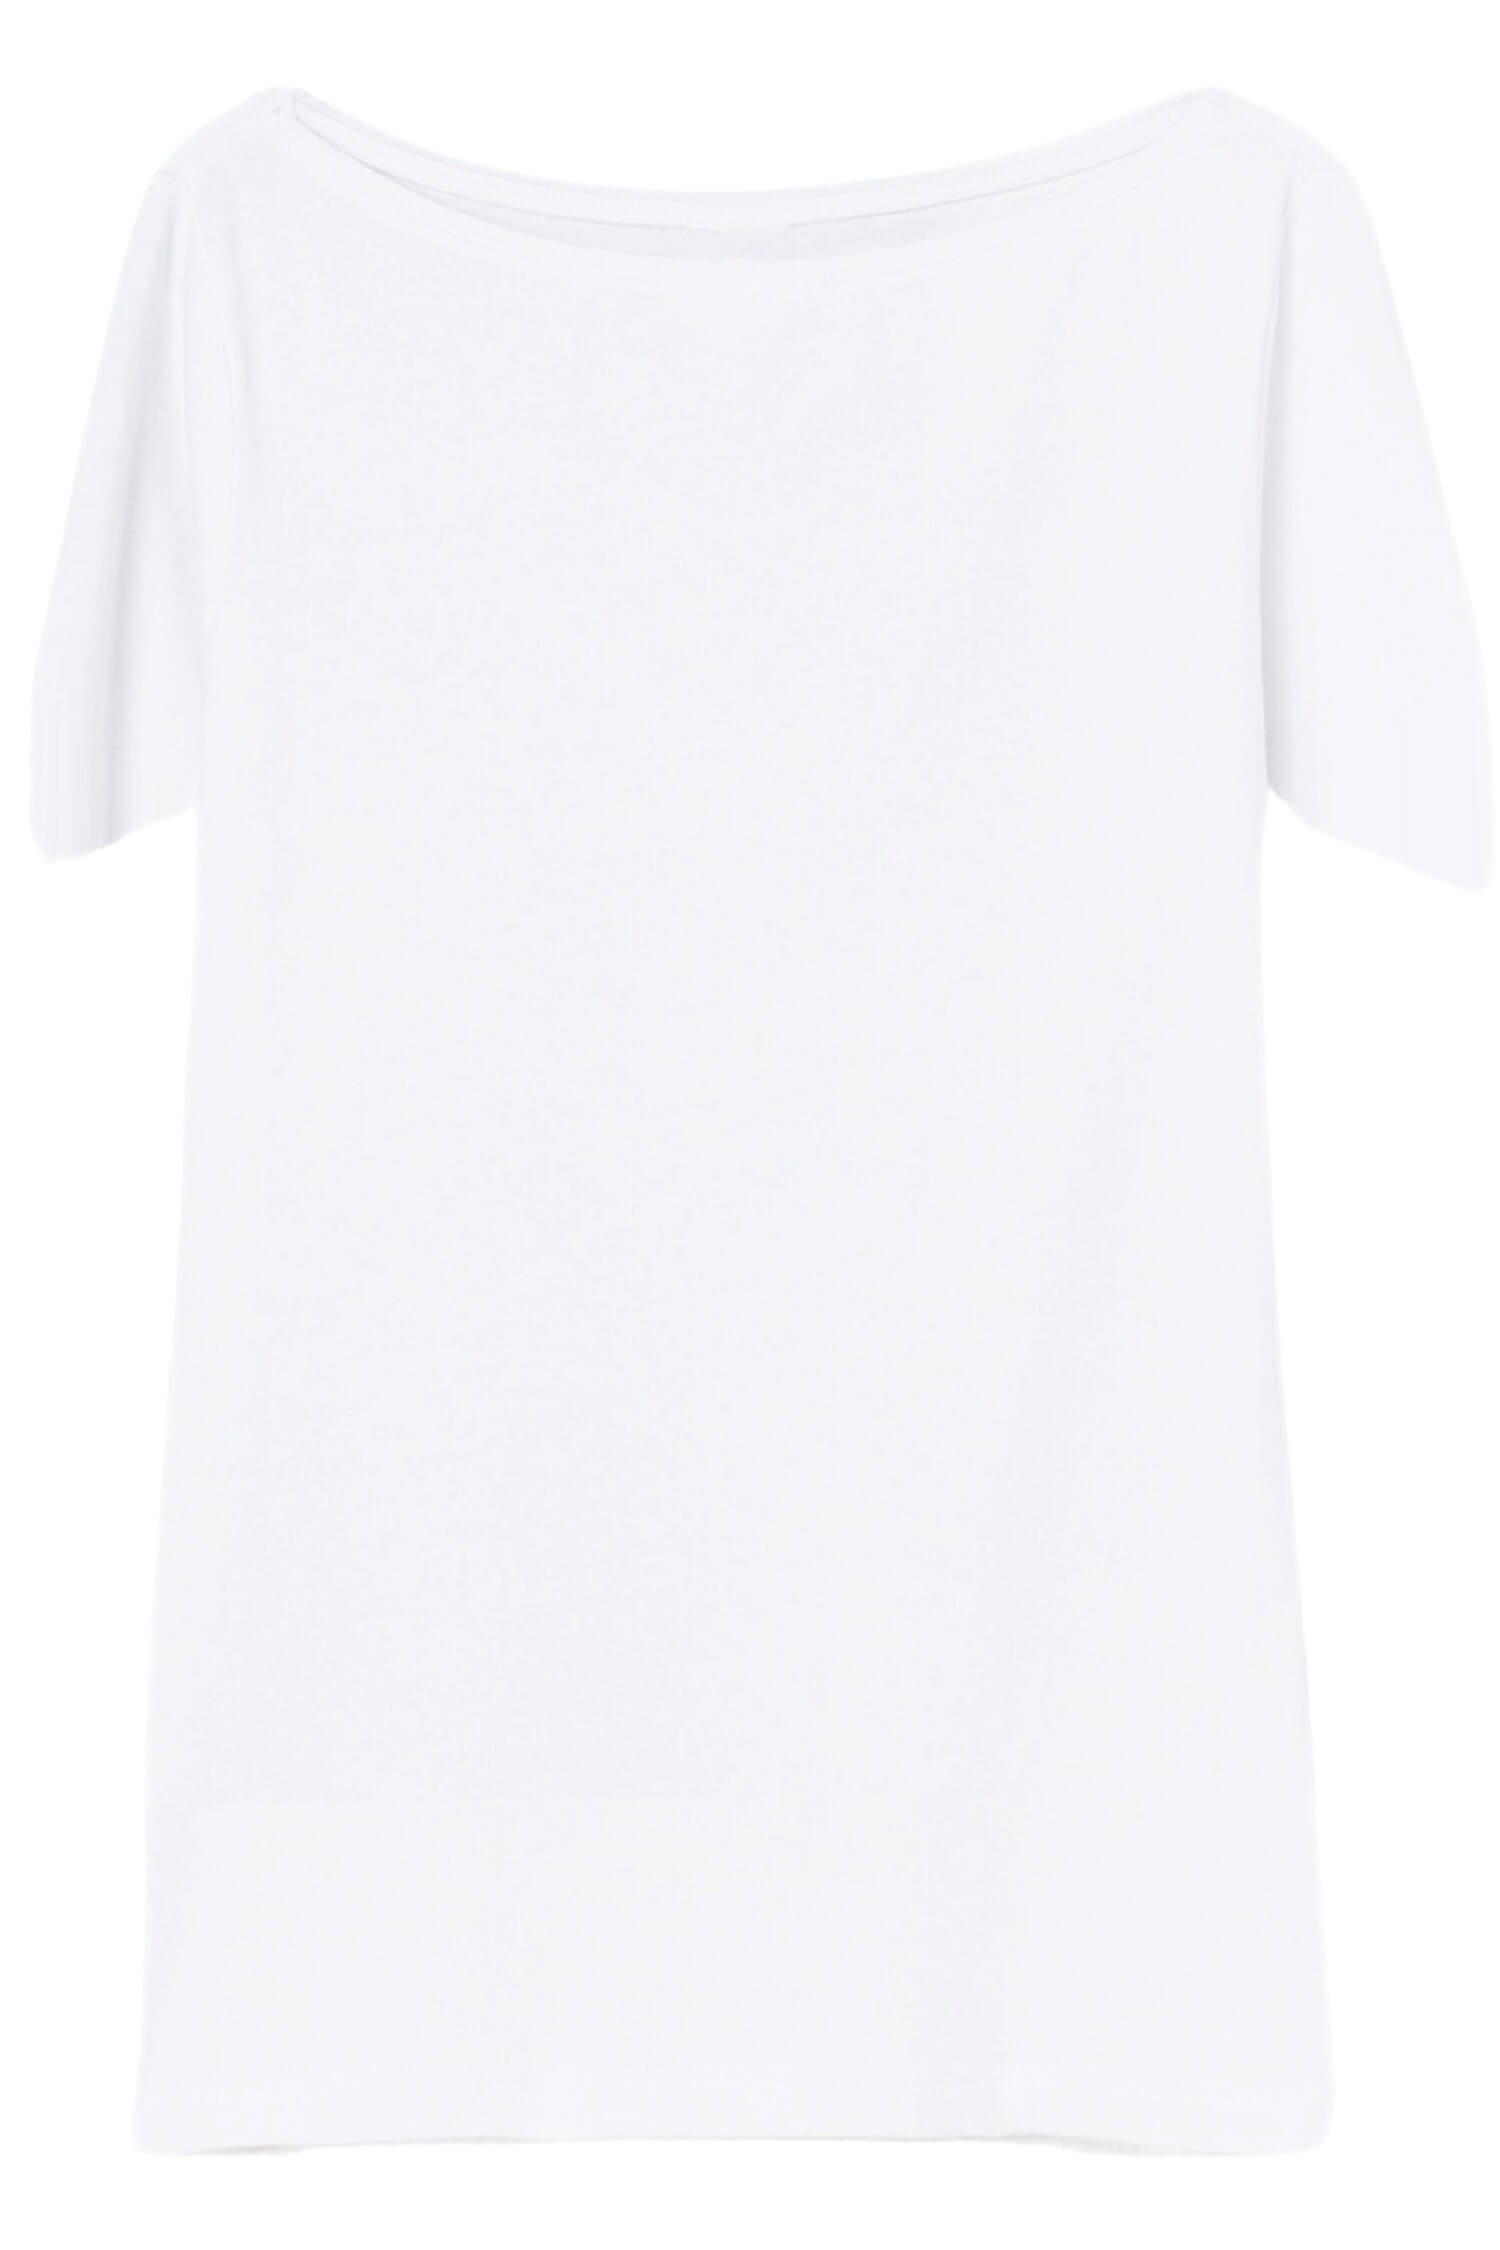 Danica dámské tričko s krátkým rukávem TSK-1005 M bílá